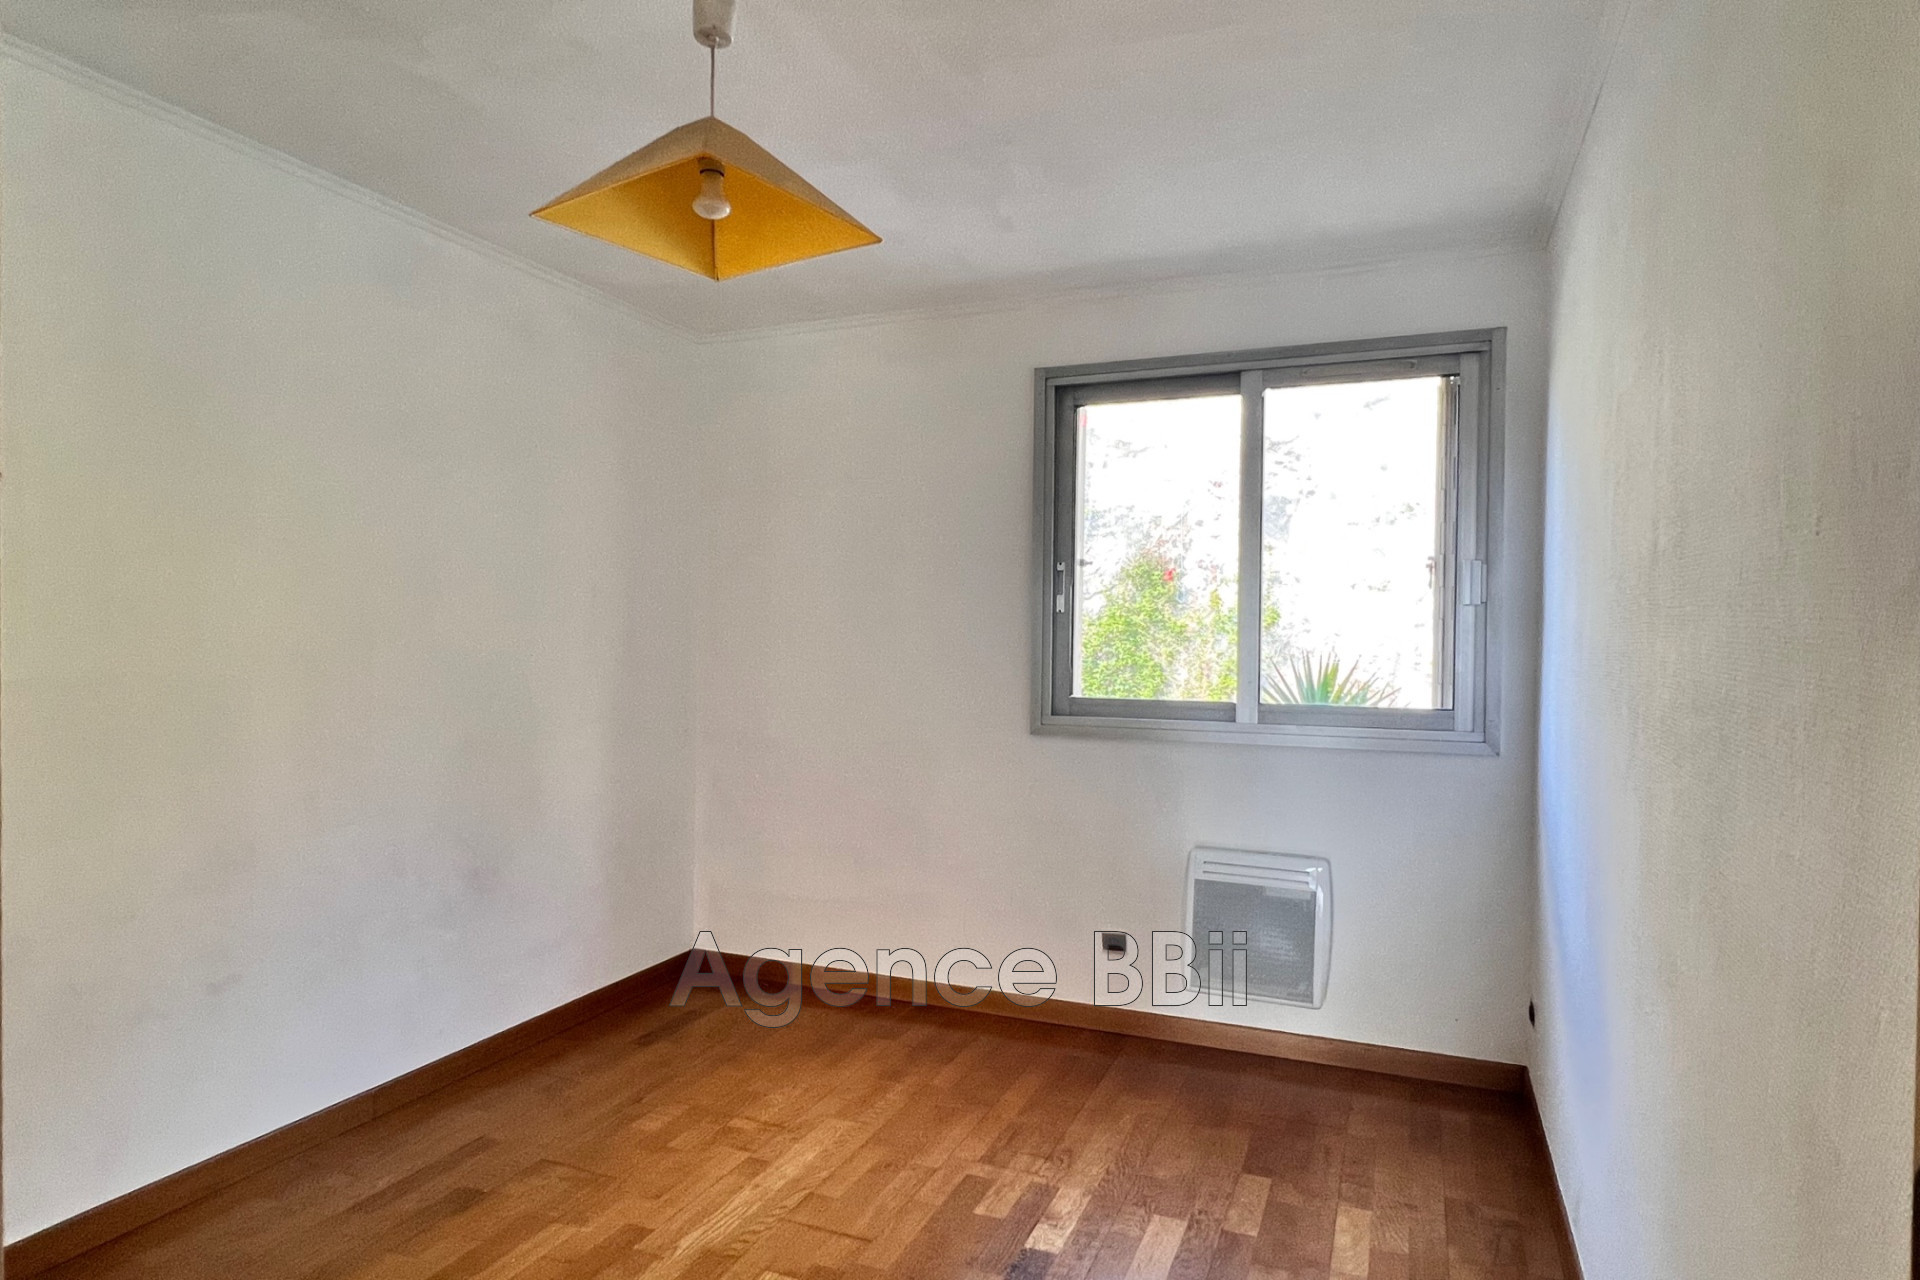 Vente Appartement 80m² 4 Pièces à Nice (06300) - BBII